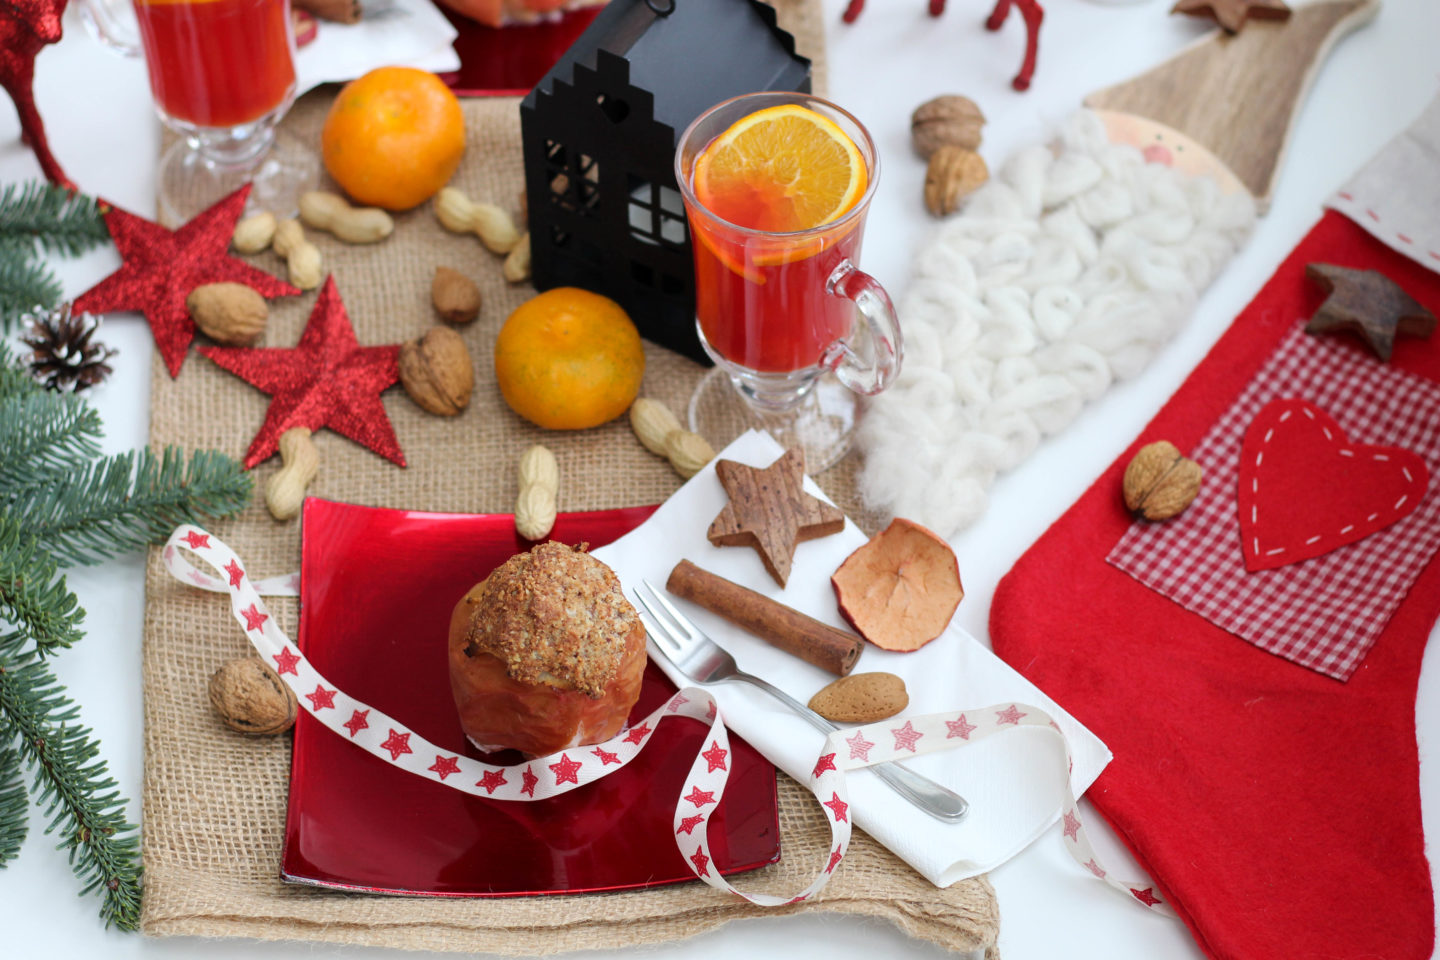 vegan-nikolaus-krampus-weihnachten-bratapfel-germteig-perchten-nuesse-christmas-soulfood-homespa-plantbased-3-von-35